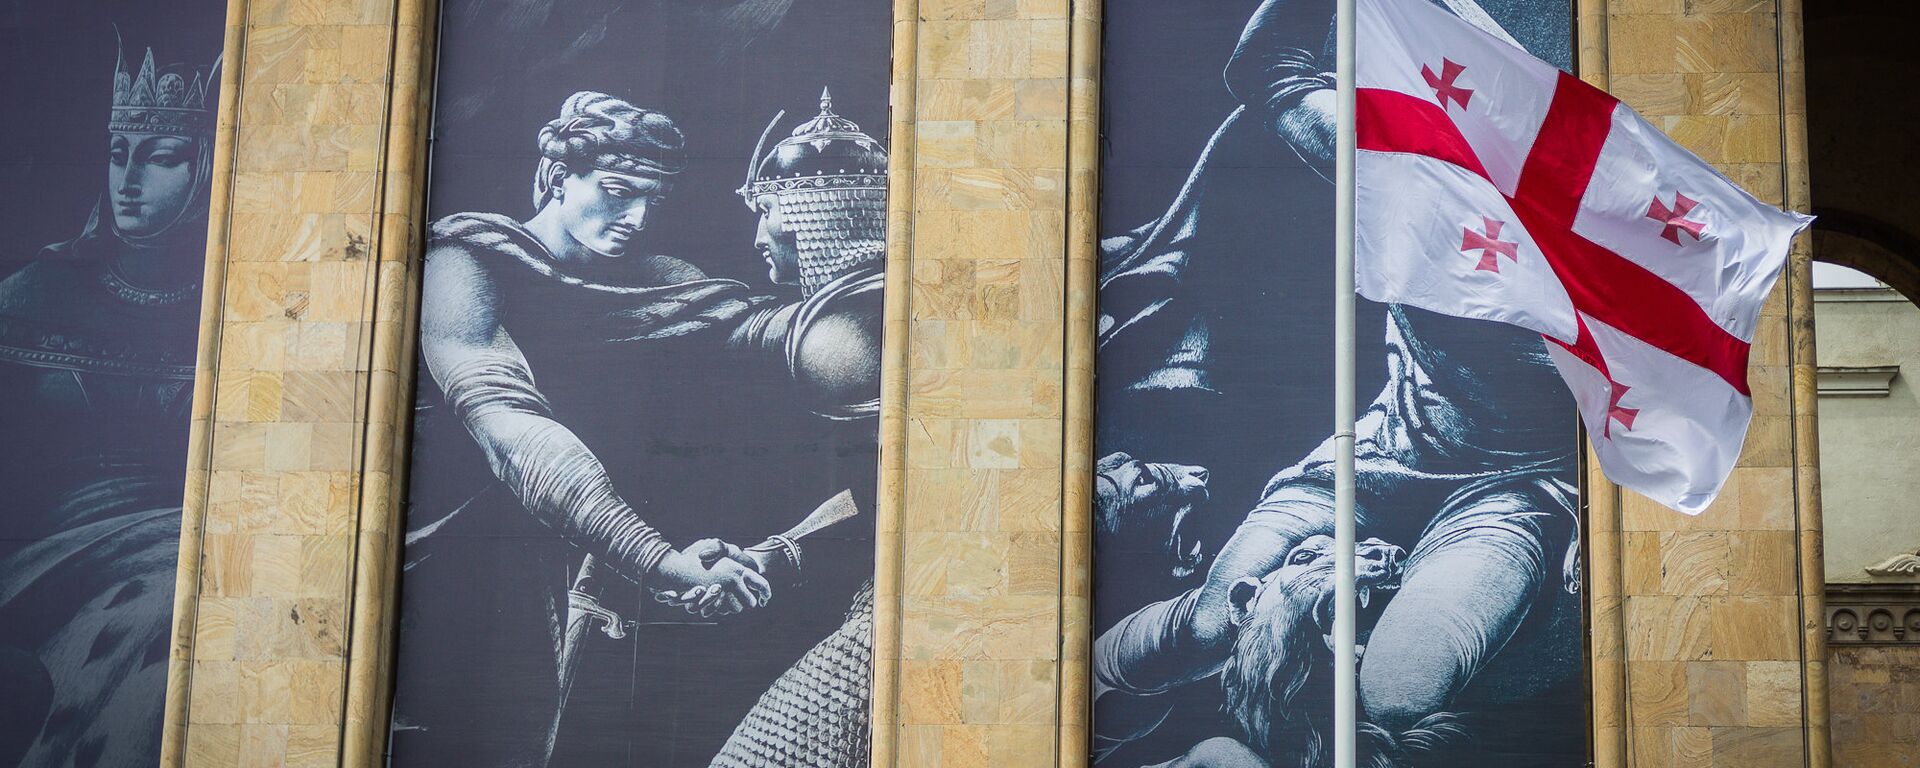 Флаг Грузии на фоне иллюстраций к поэме Шота Руставели Витязь в тигровой шкуре, расположенных на здании Парламента Грузии - Sputnik Грузия, 1920, 13.10.2021